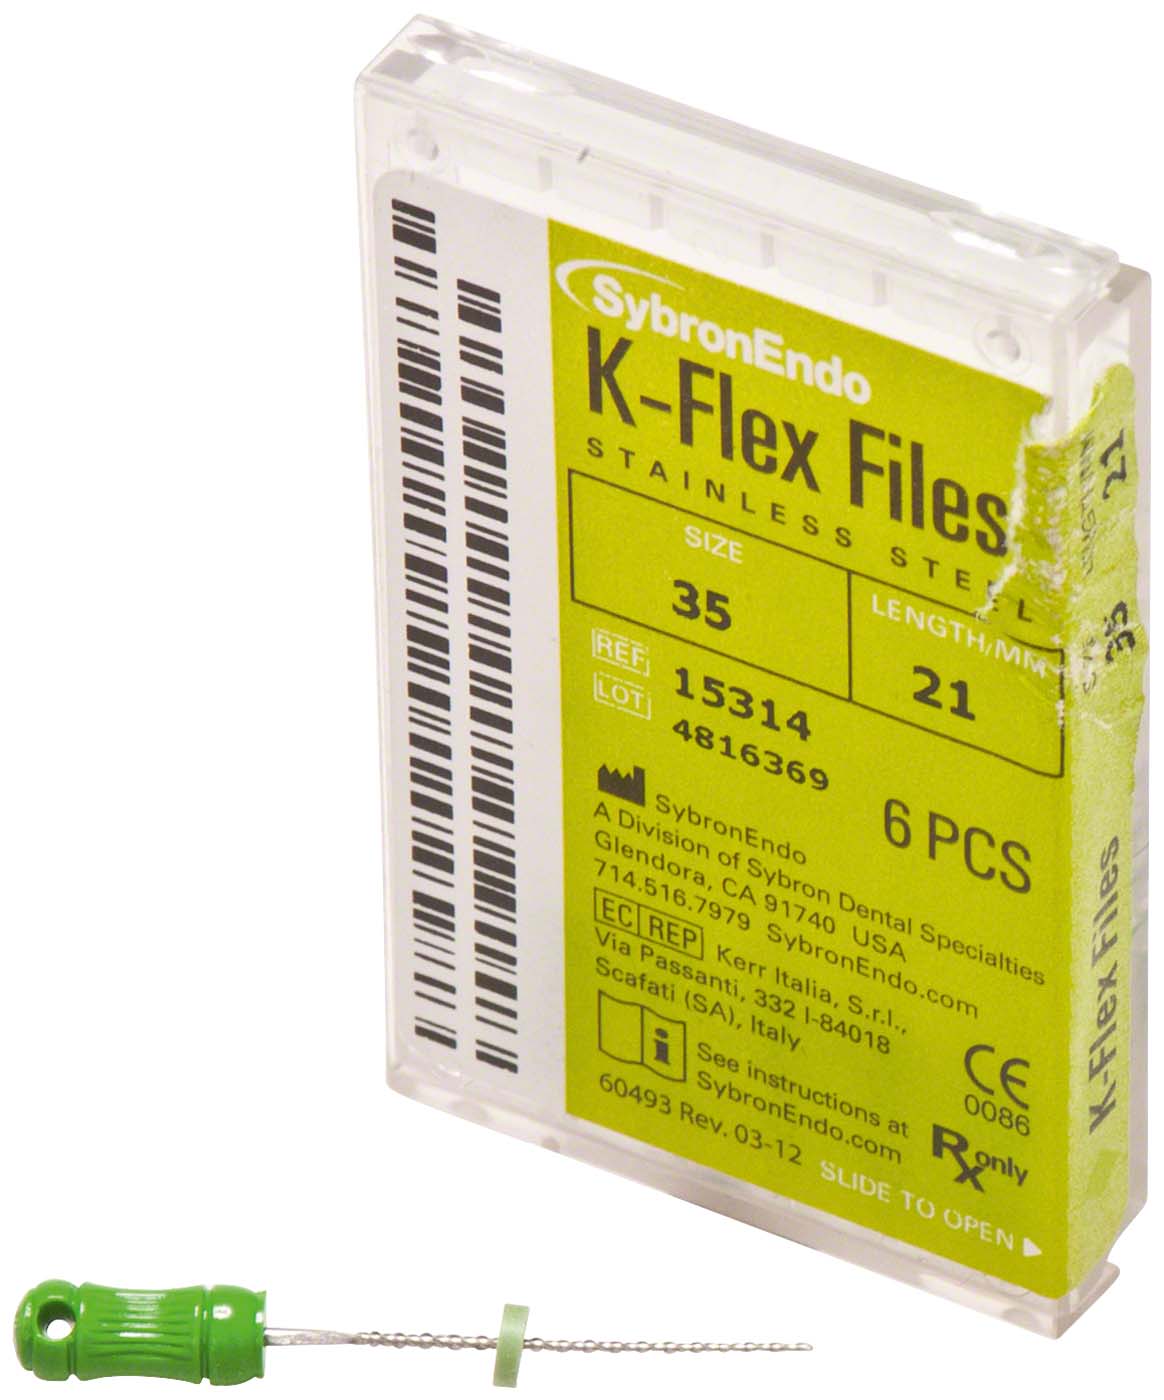 K-Flex Files Kerr